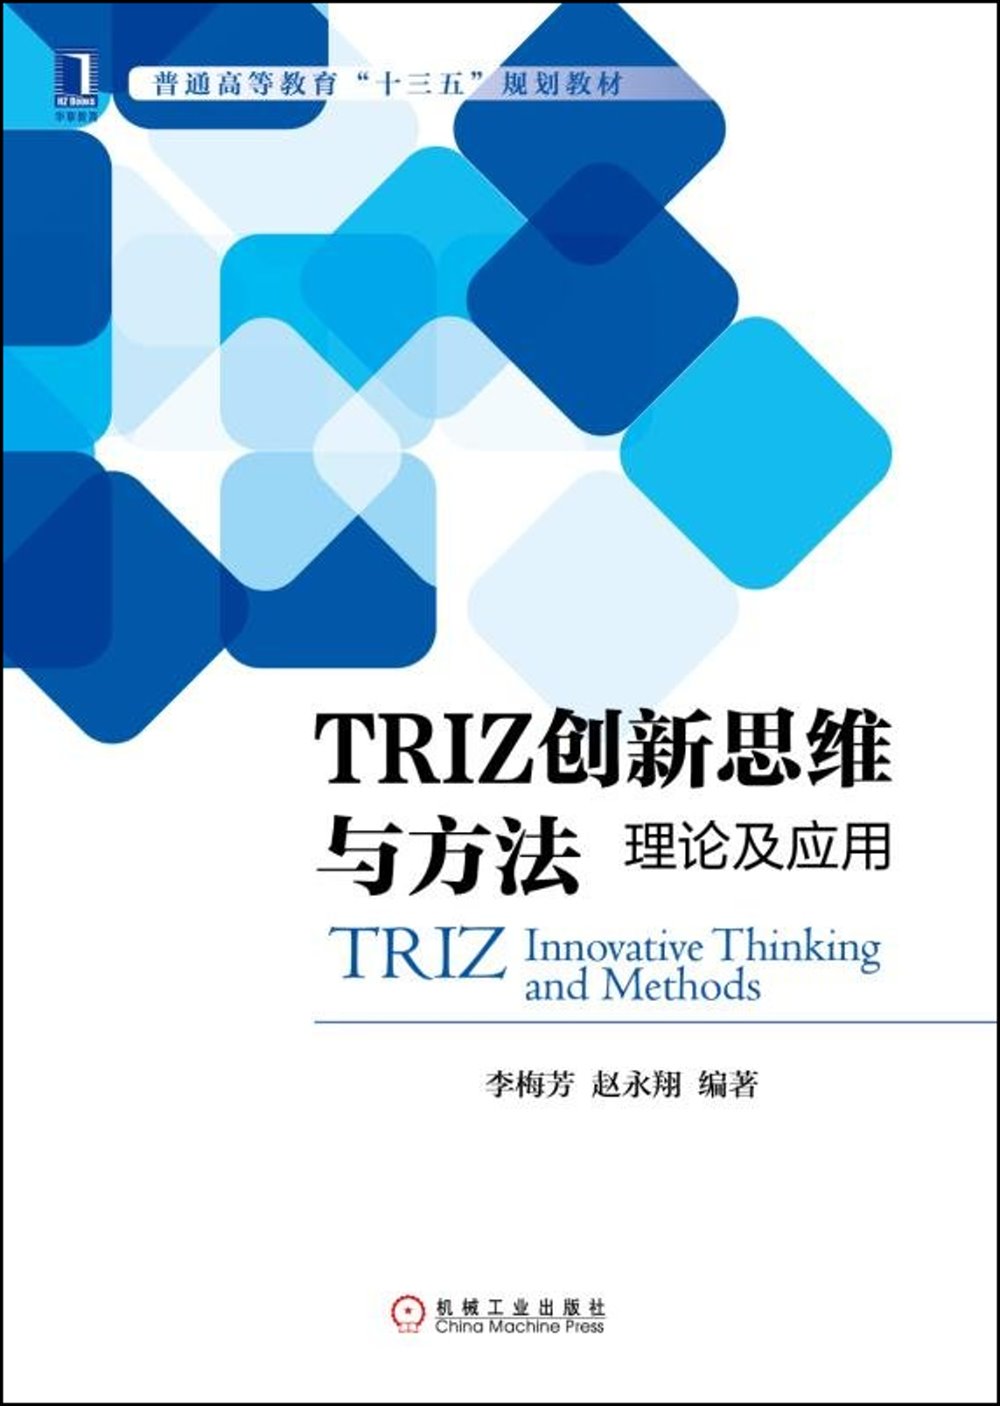 TRIZ創新思維與方法：理論及應用